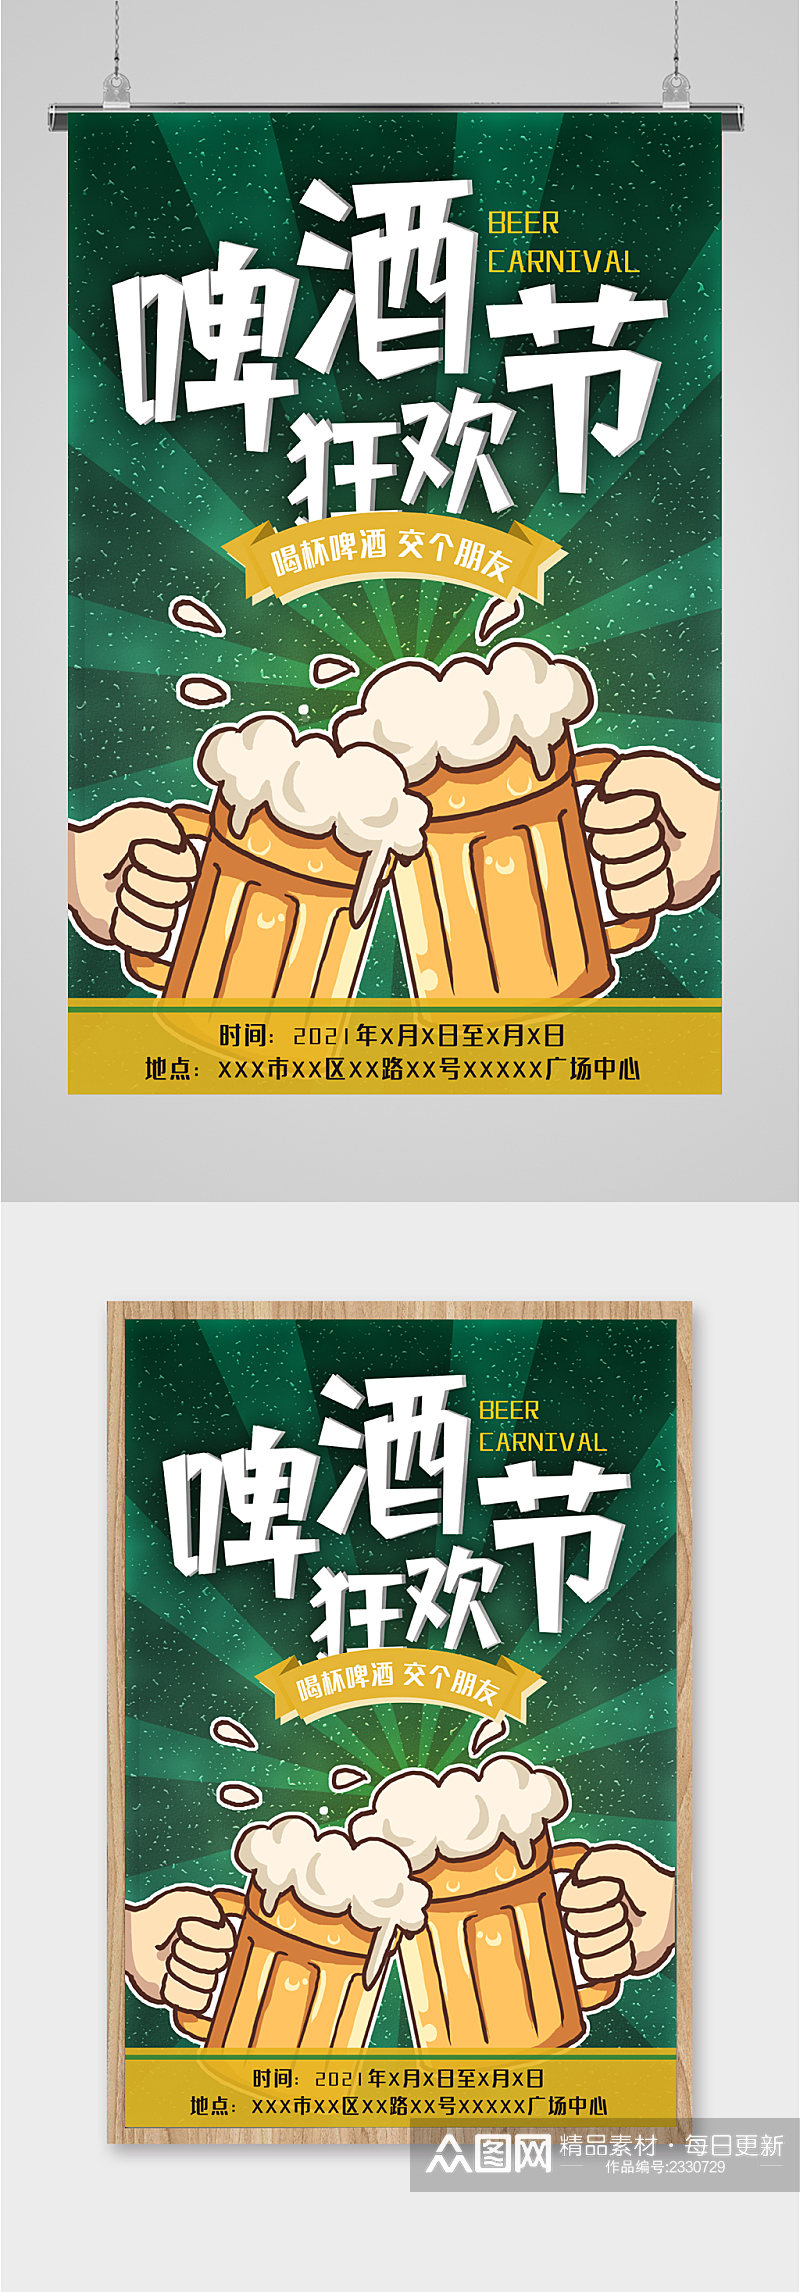 啤酒狂欢节卡通海报素材